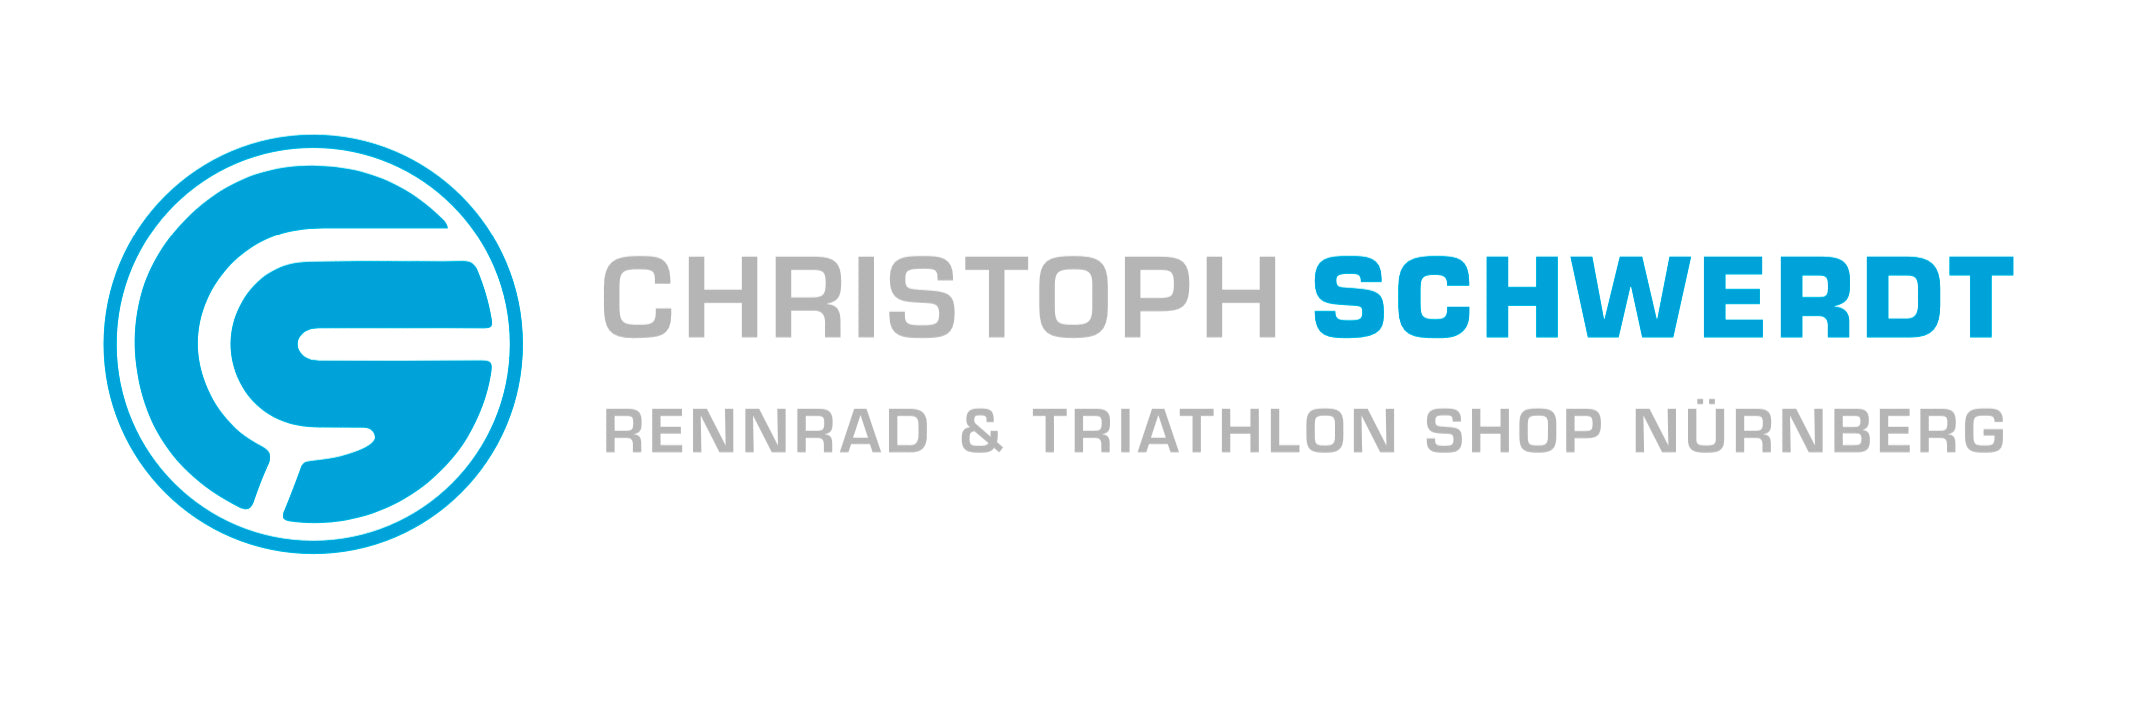 Christoph Schwerdt - Rennrad und Triathlon Shop Nürnberg